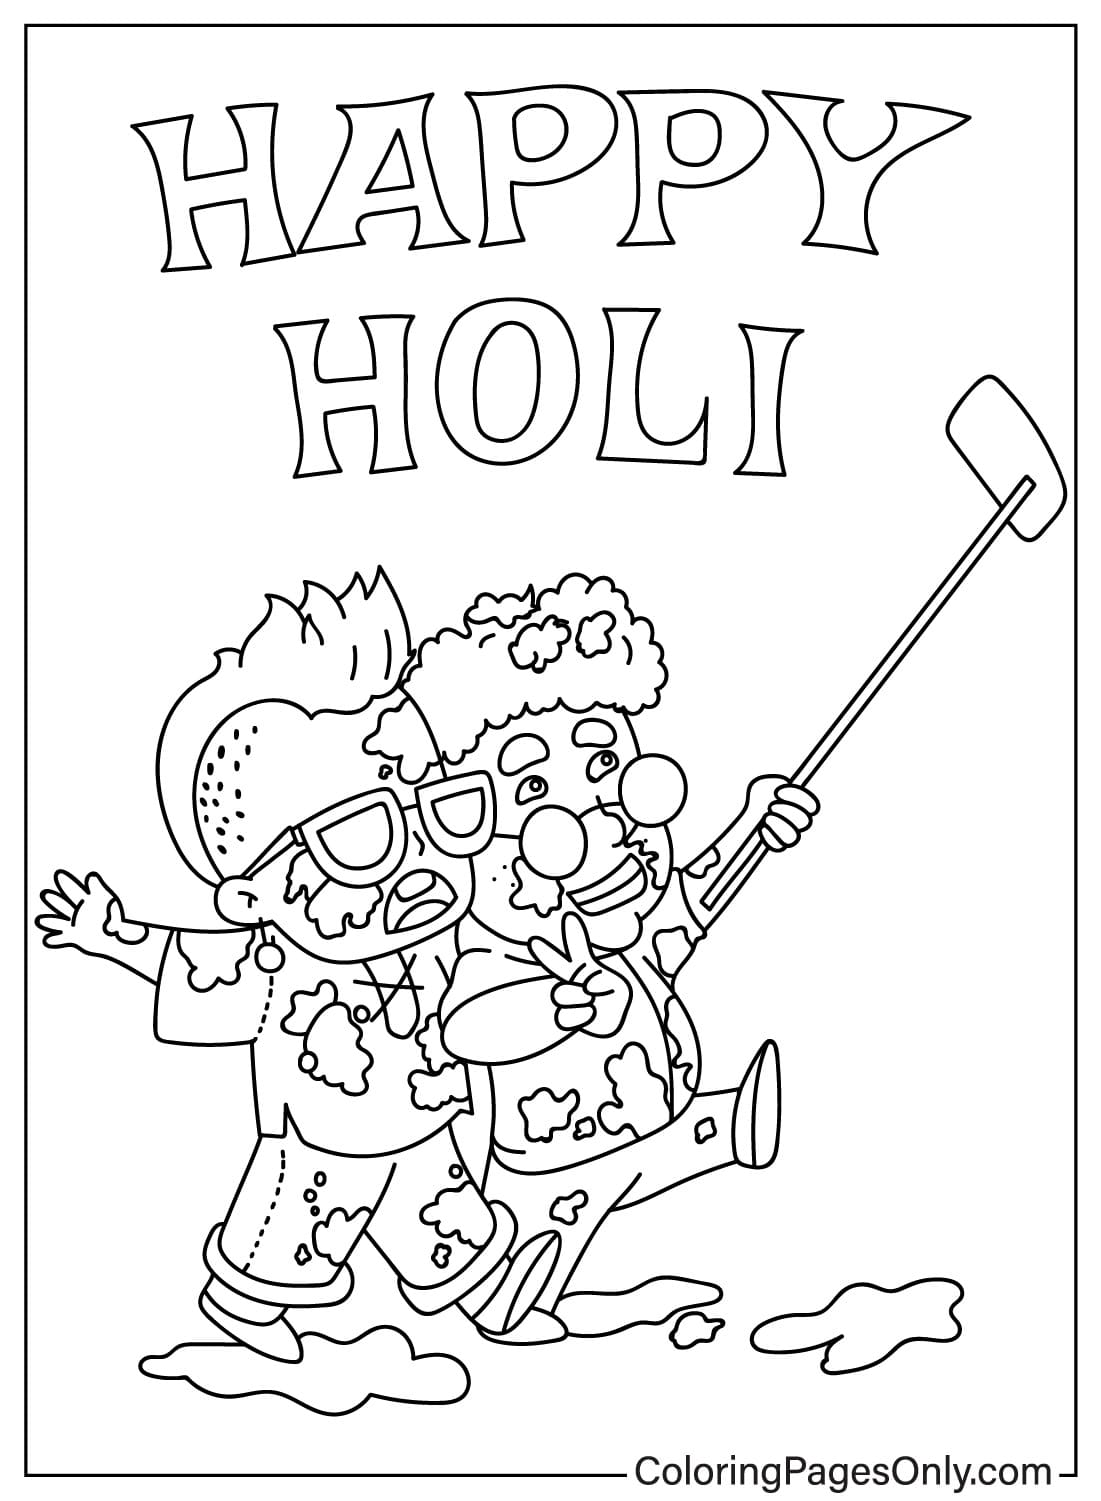 Imágenes de Holi para colorear de Holi